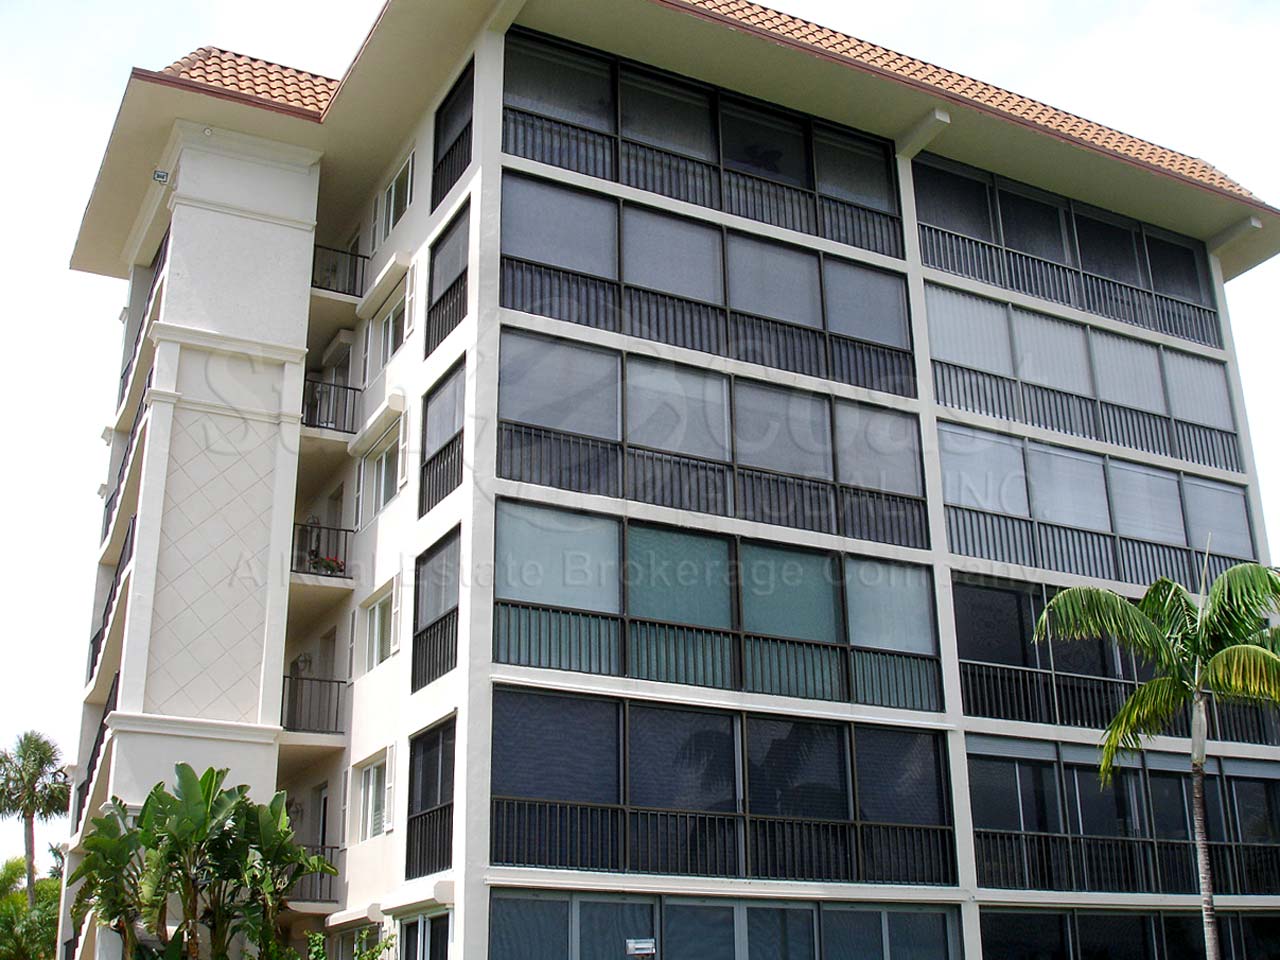 Commodore Club Condominium Building